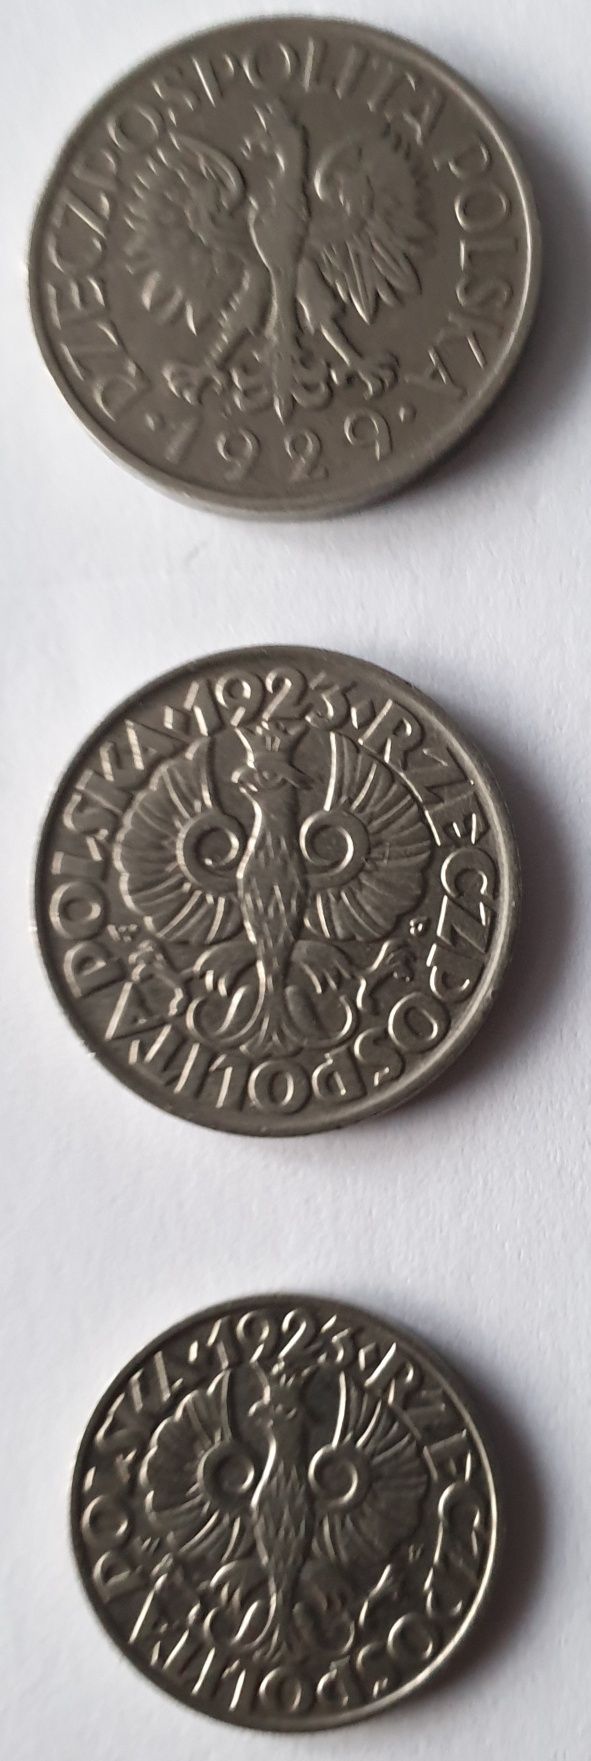 Monety stare 1 zł z 1929r i 50 gr, 20 gr z 1923 rok